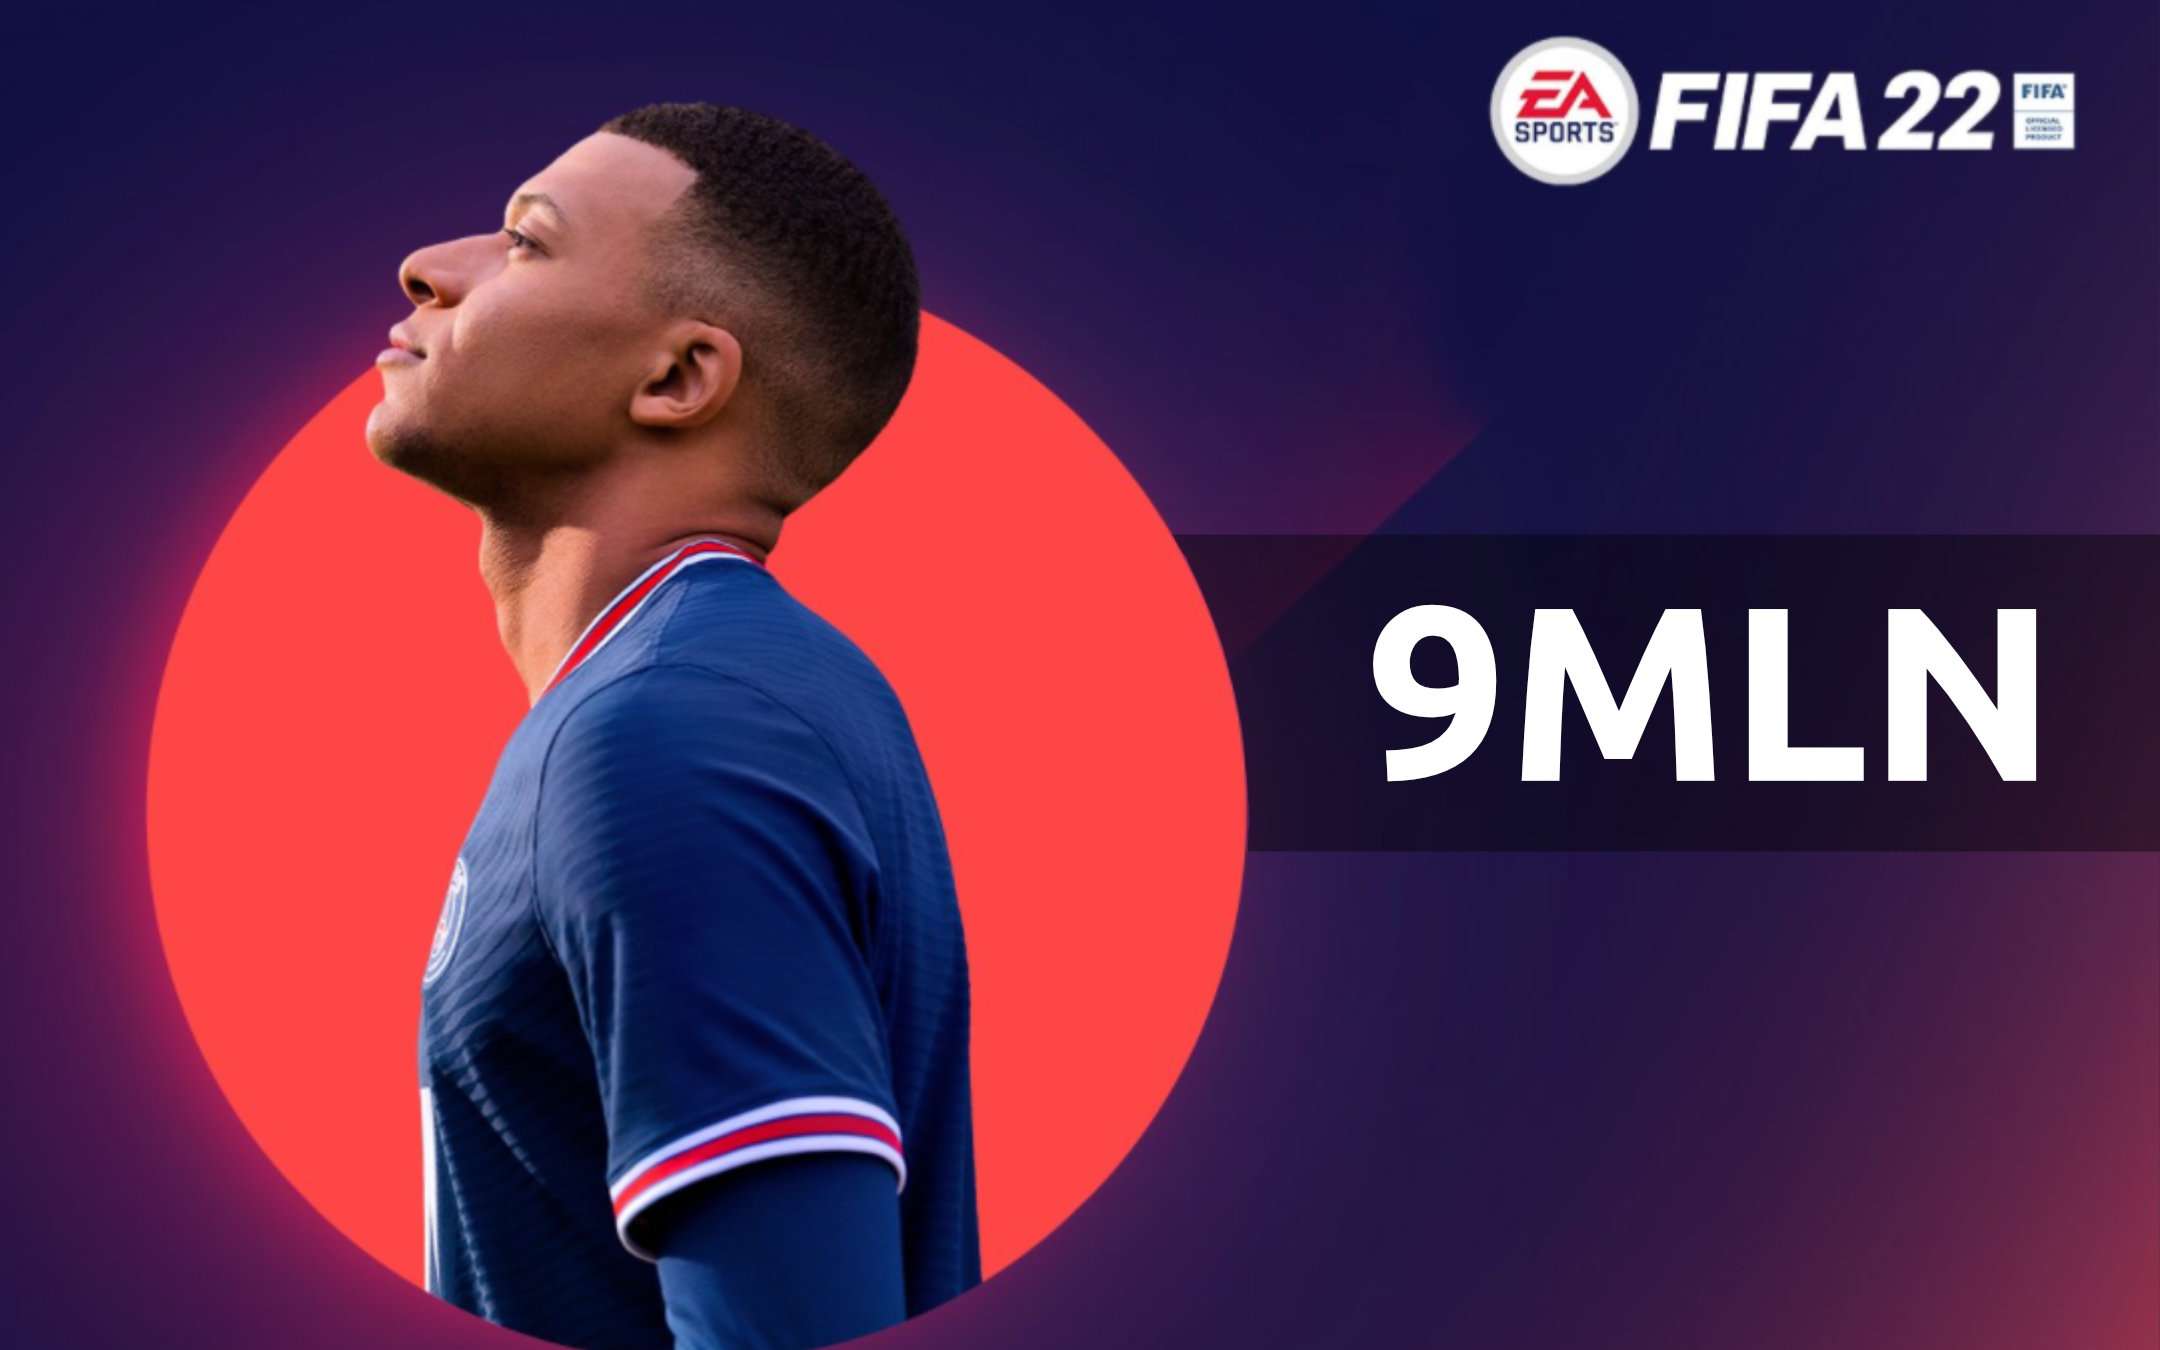 FIFA 22 da record, oltre 9 milioni di giocatori in pochi giorni